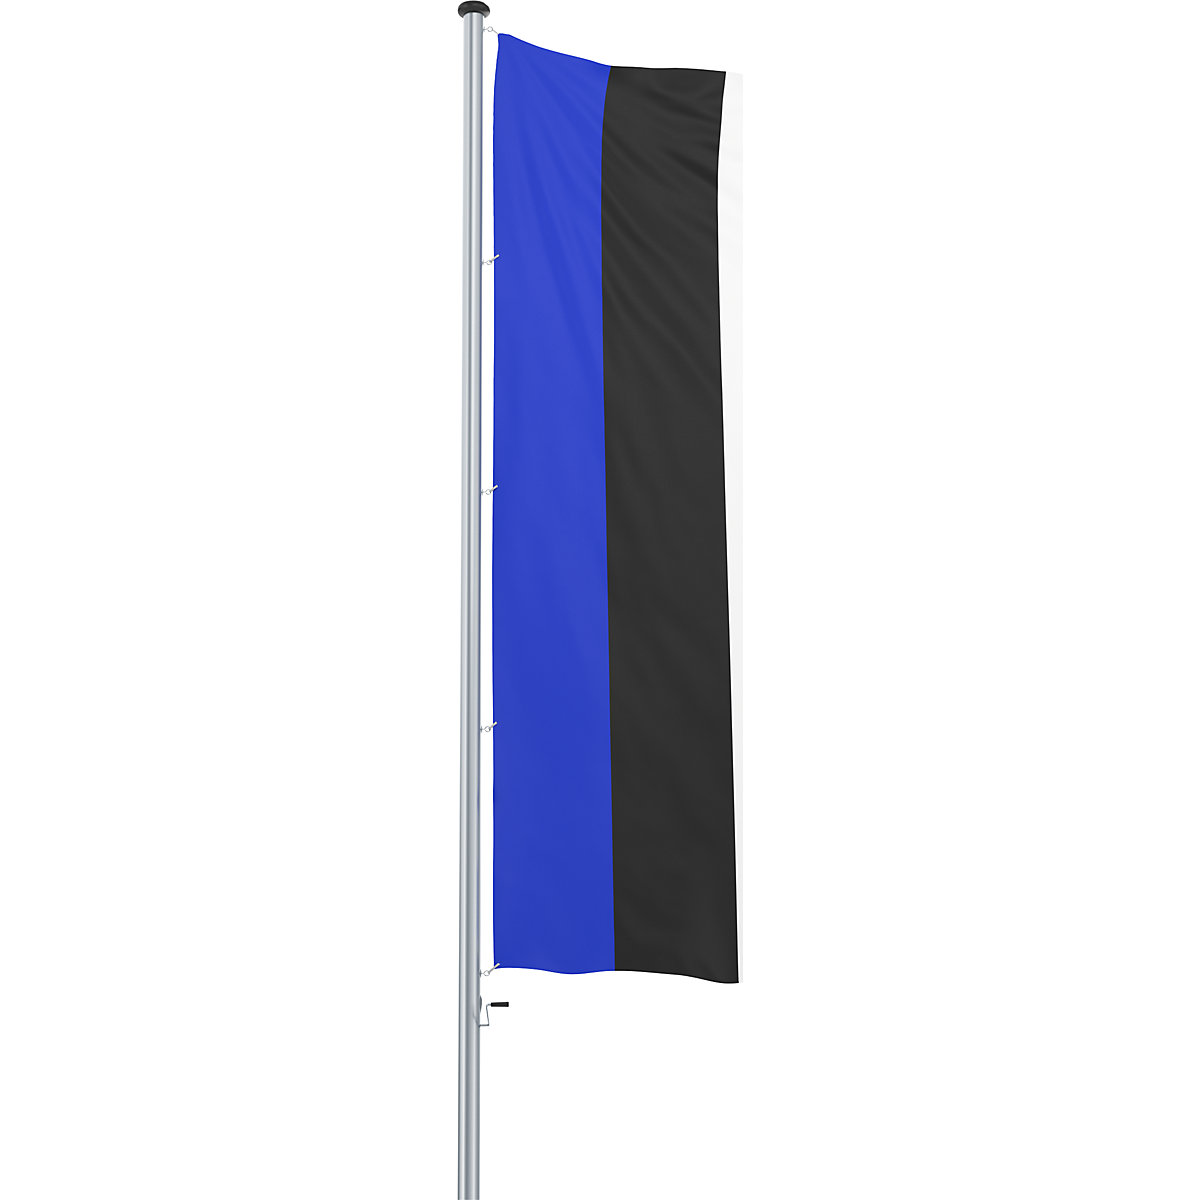 Mannus – Bandera para izar/bandera del país (Imagen del producto 46)